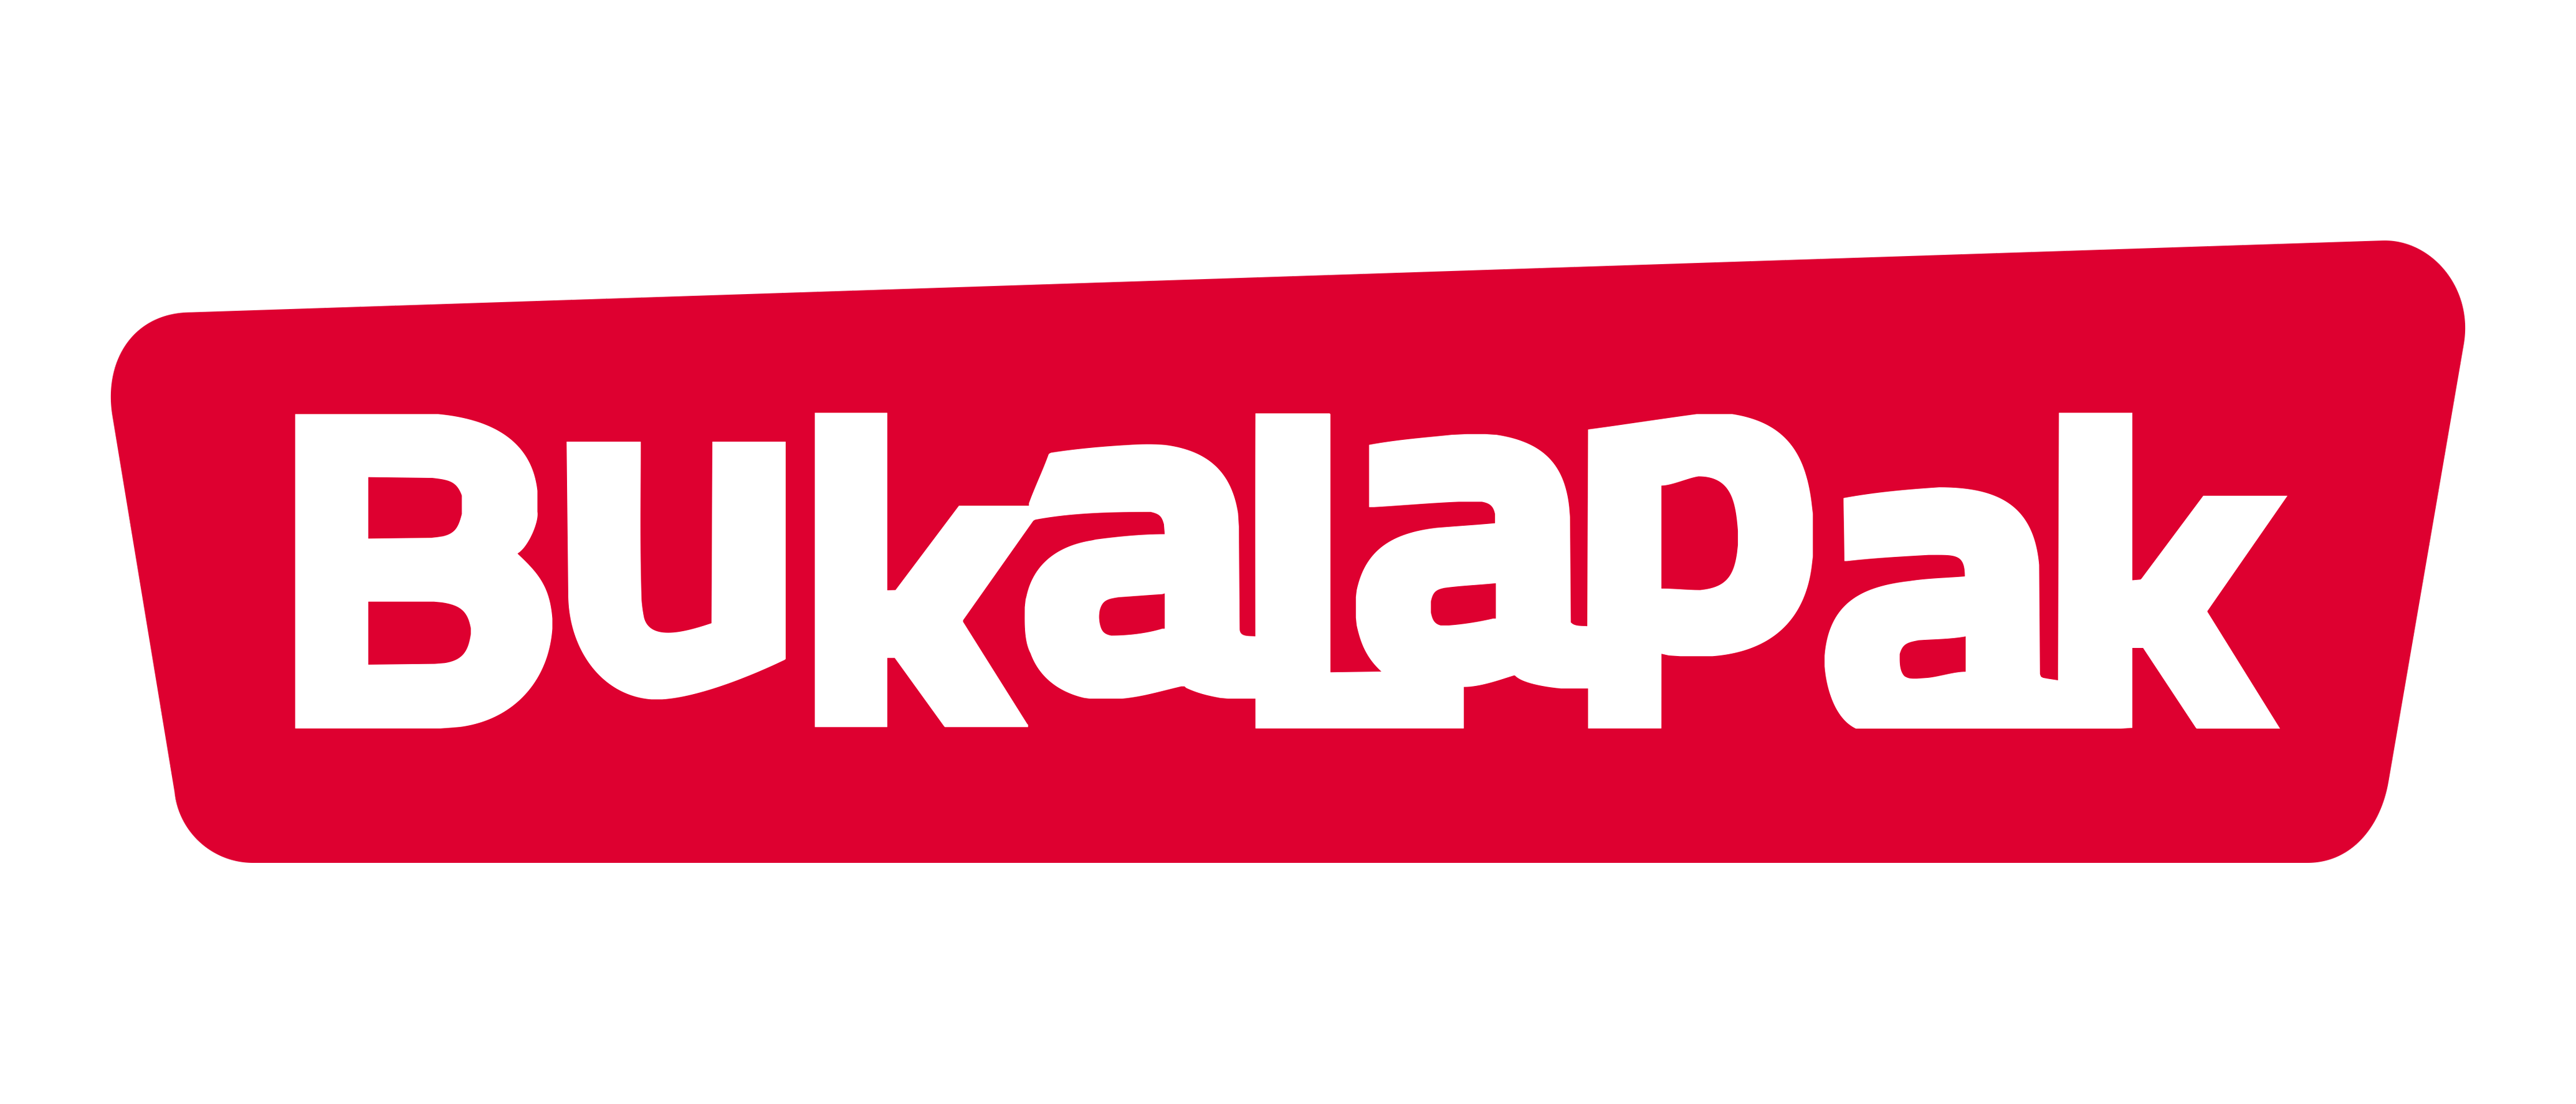 Logo BukaLapak (PNG-1080p) - FileVector69